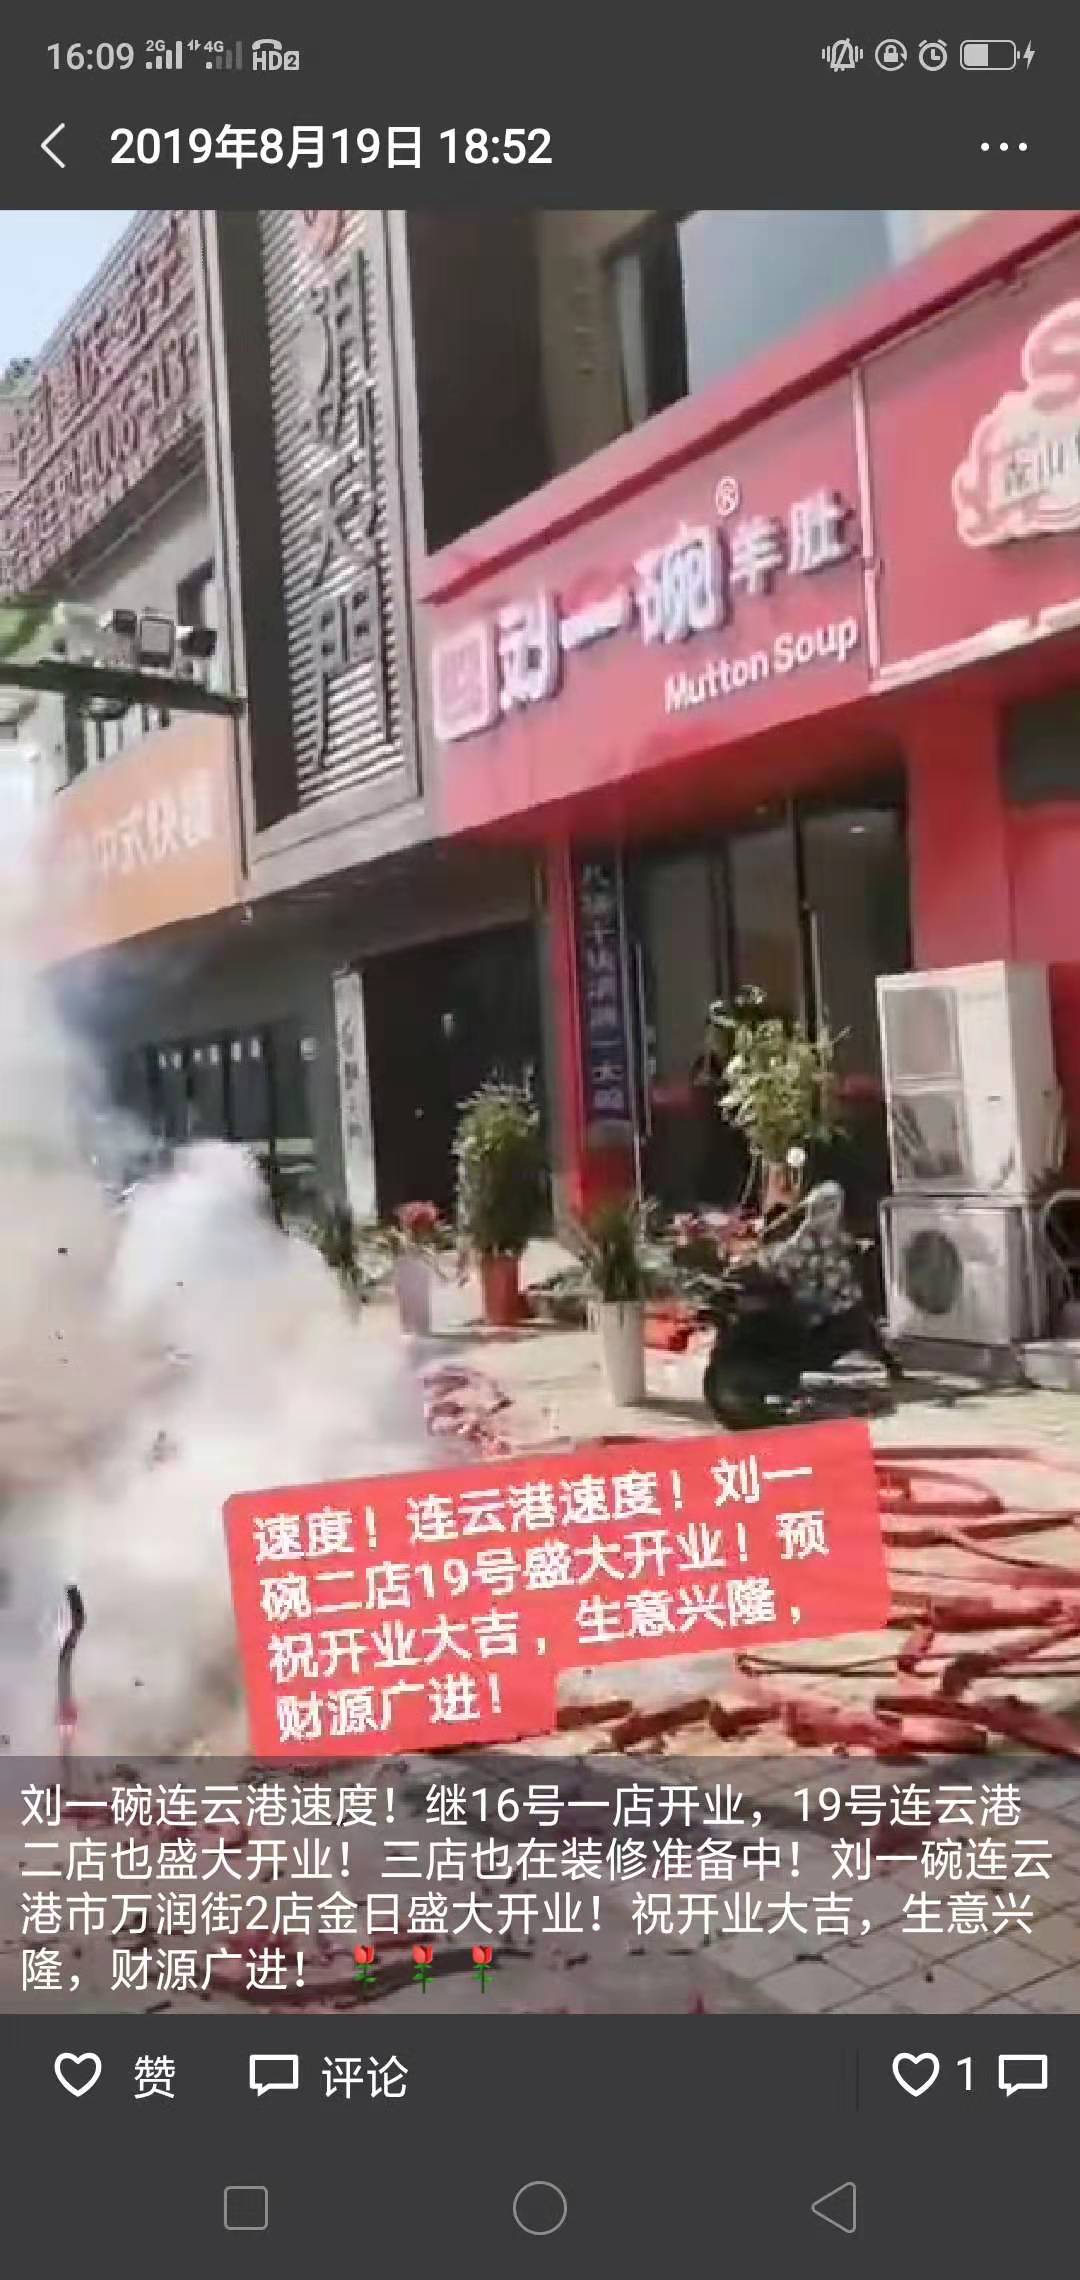 山东刘一碗连云港二店于2019年8月19日盛大开业祝开业大吉